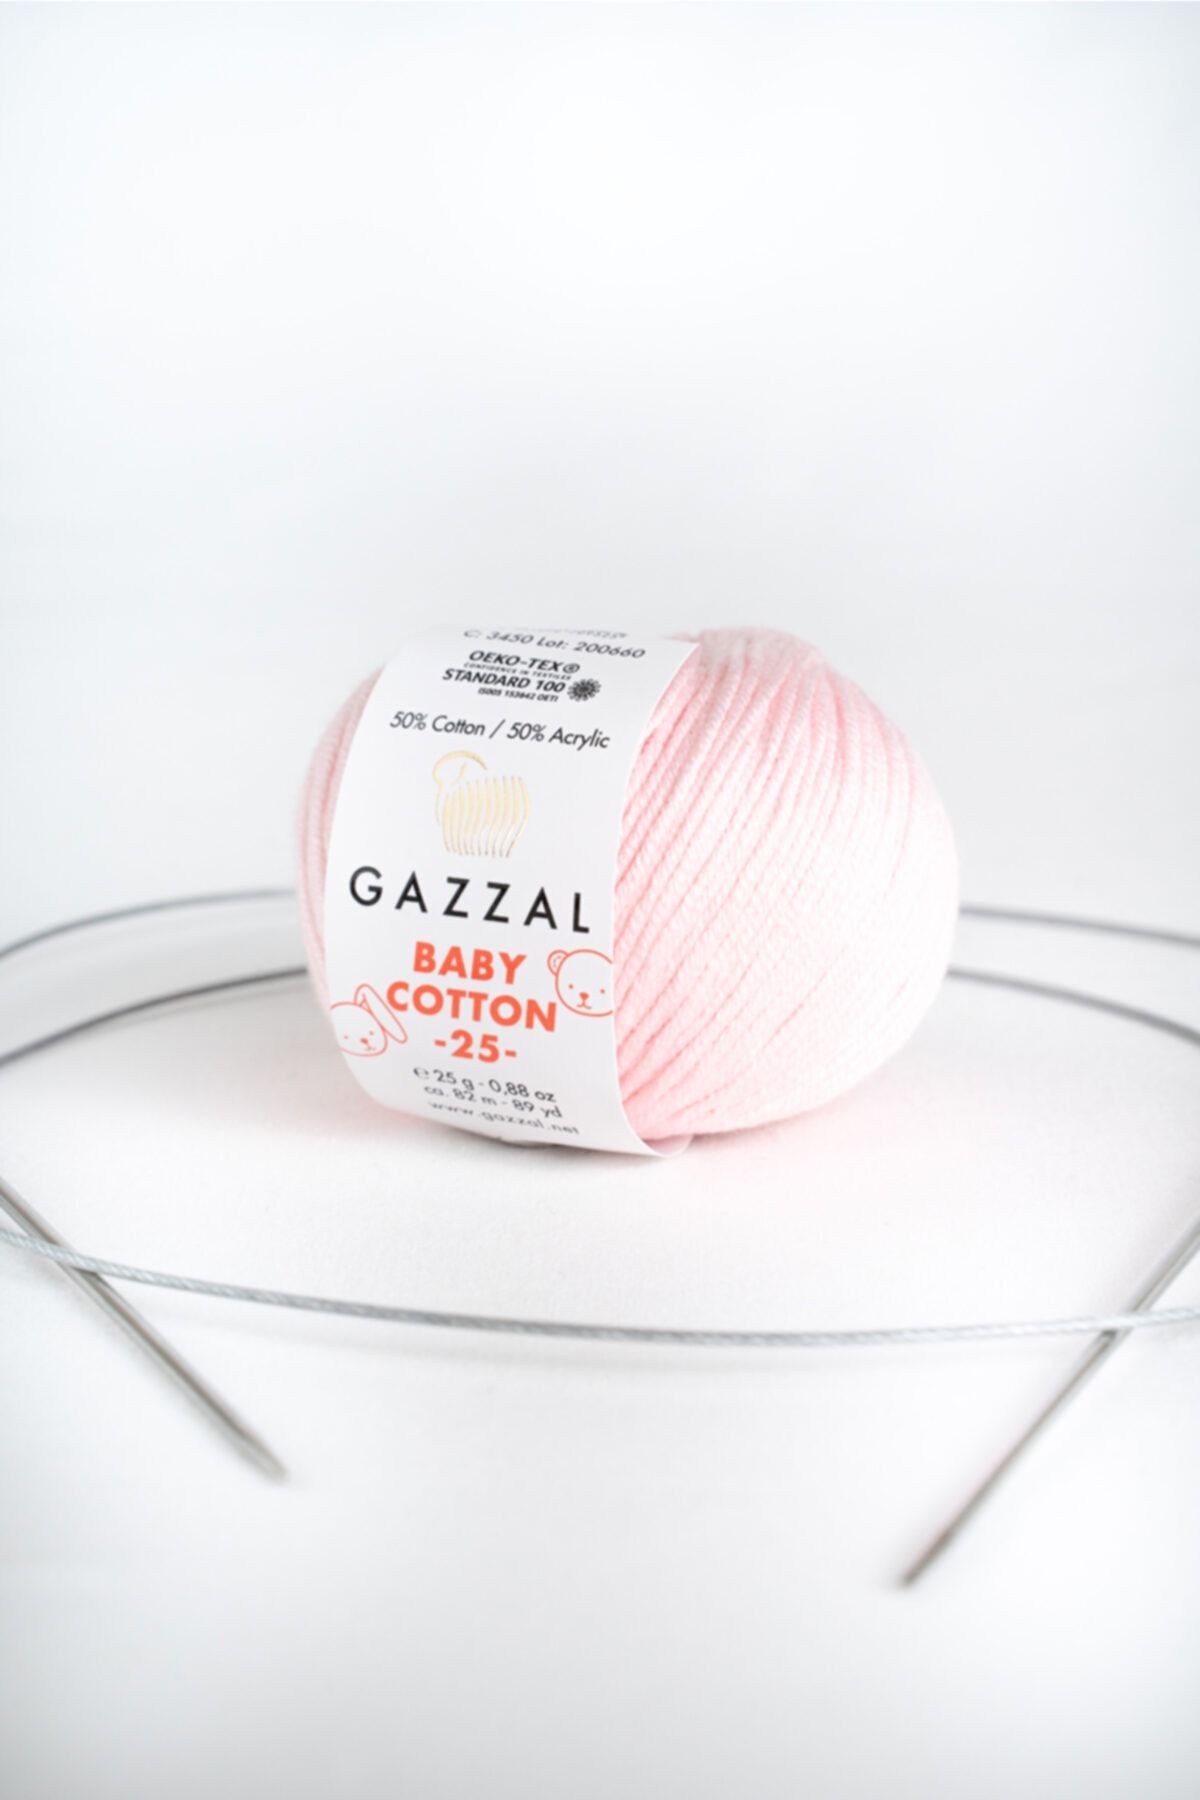 Gazzal Baby Cotton 25 gr Amigurumi, Punch El Örgü Ipligi Taka Yarn (3411)